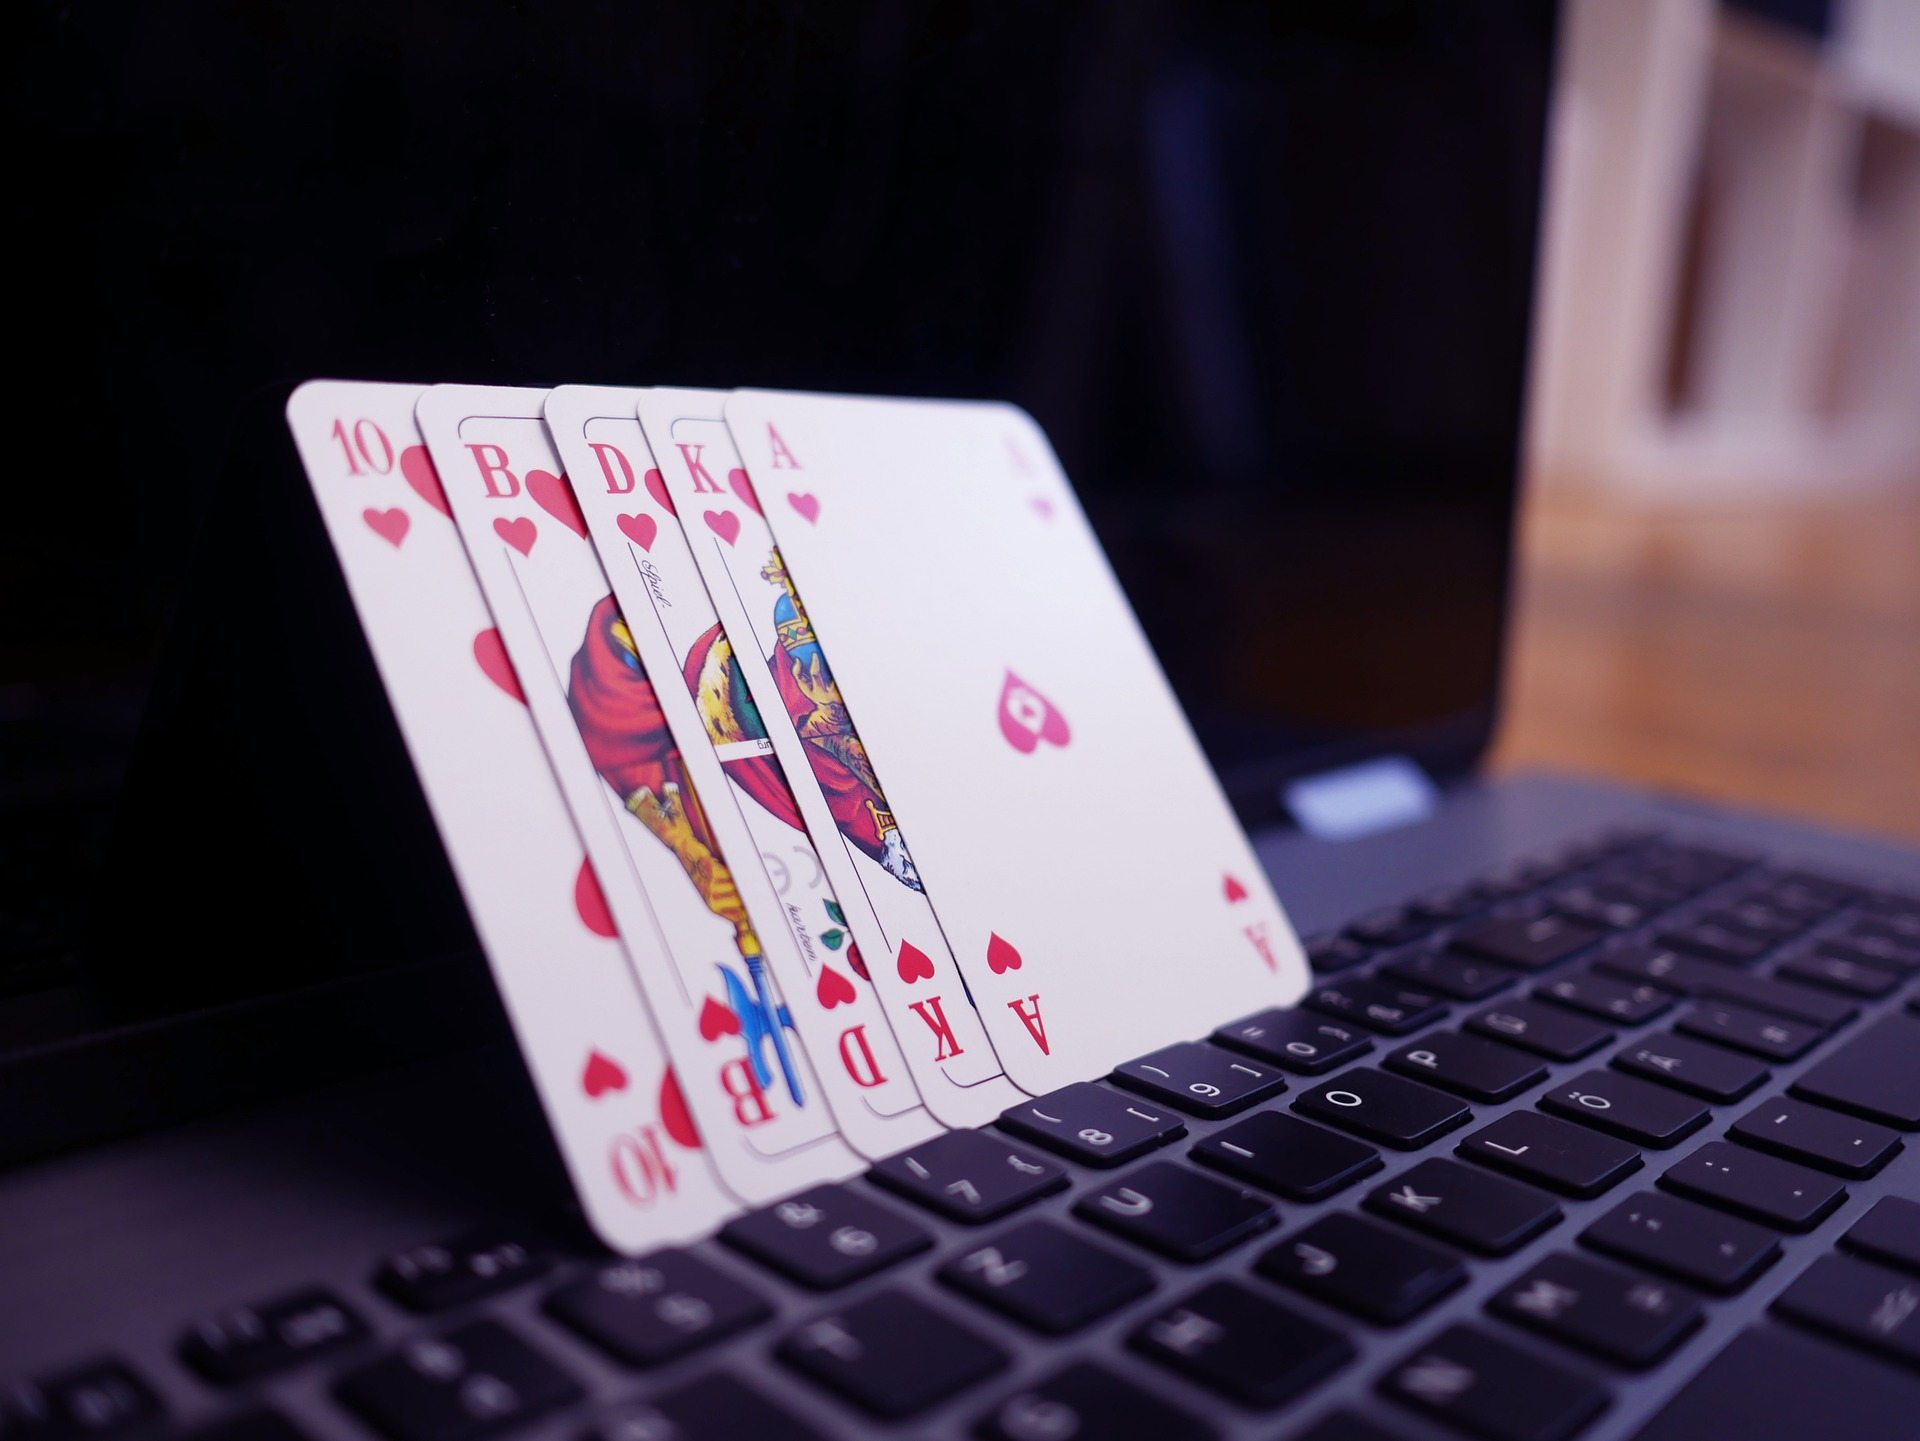 Ein Bild von vier Spielkarten, die auf einem Laptop stehen